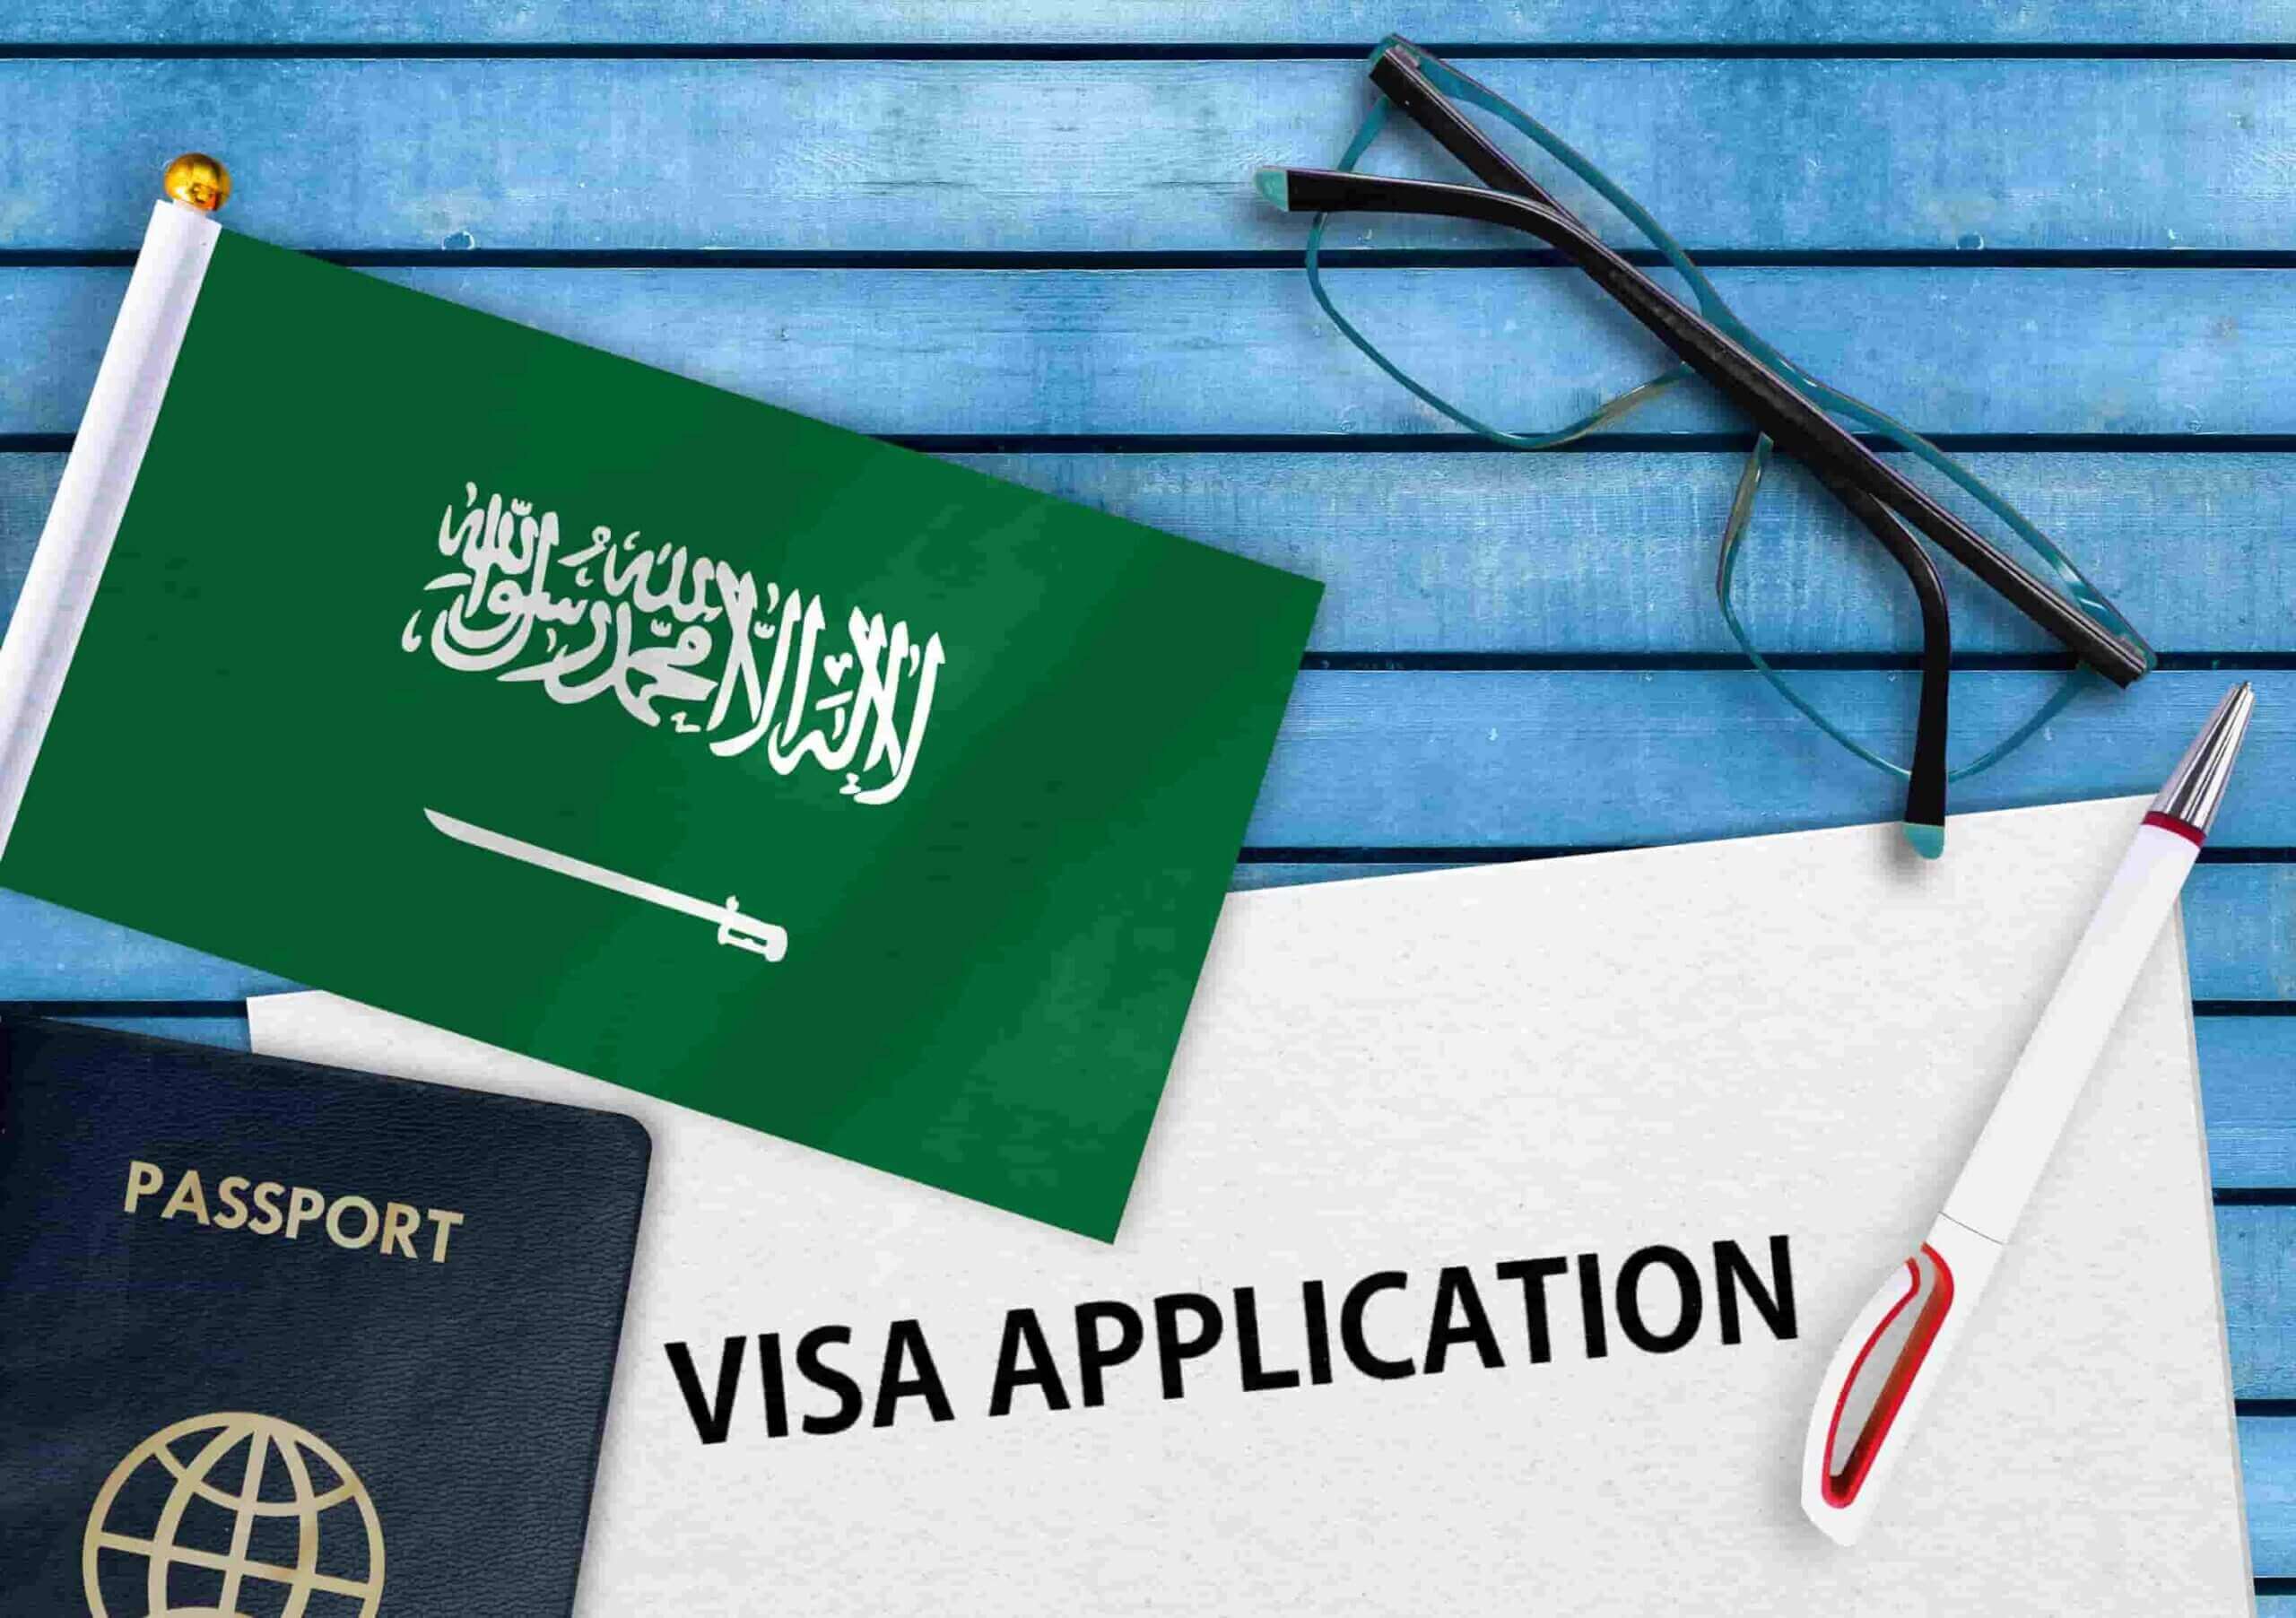 visit visa to saudi arabia from oman